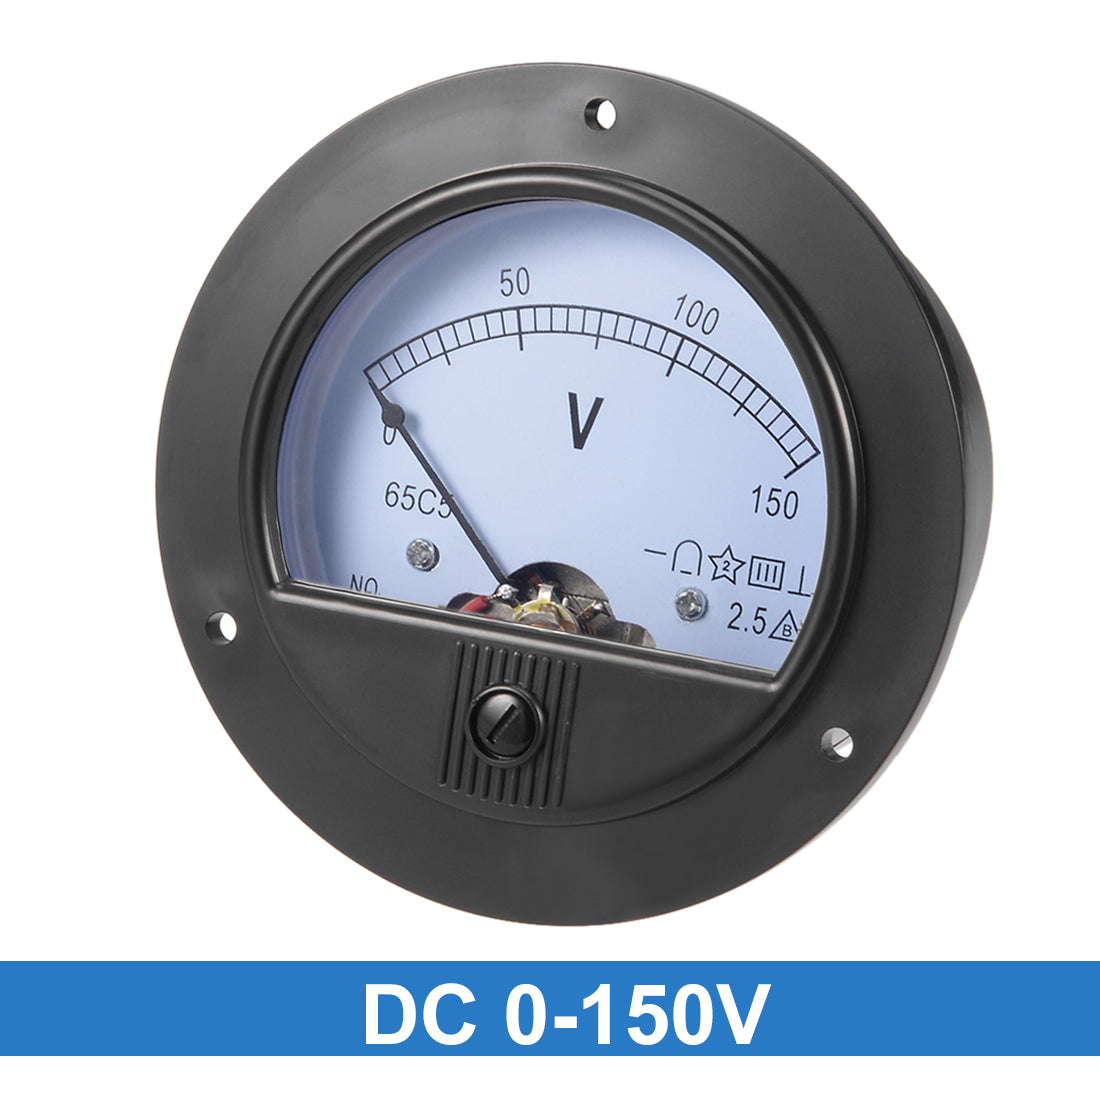 uxcell Uxcell DC 0-150V Analog Panel Voltage Gauge Volt Meter 65C5 2.5% Error Margin